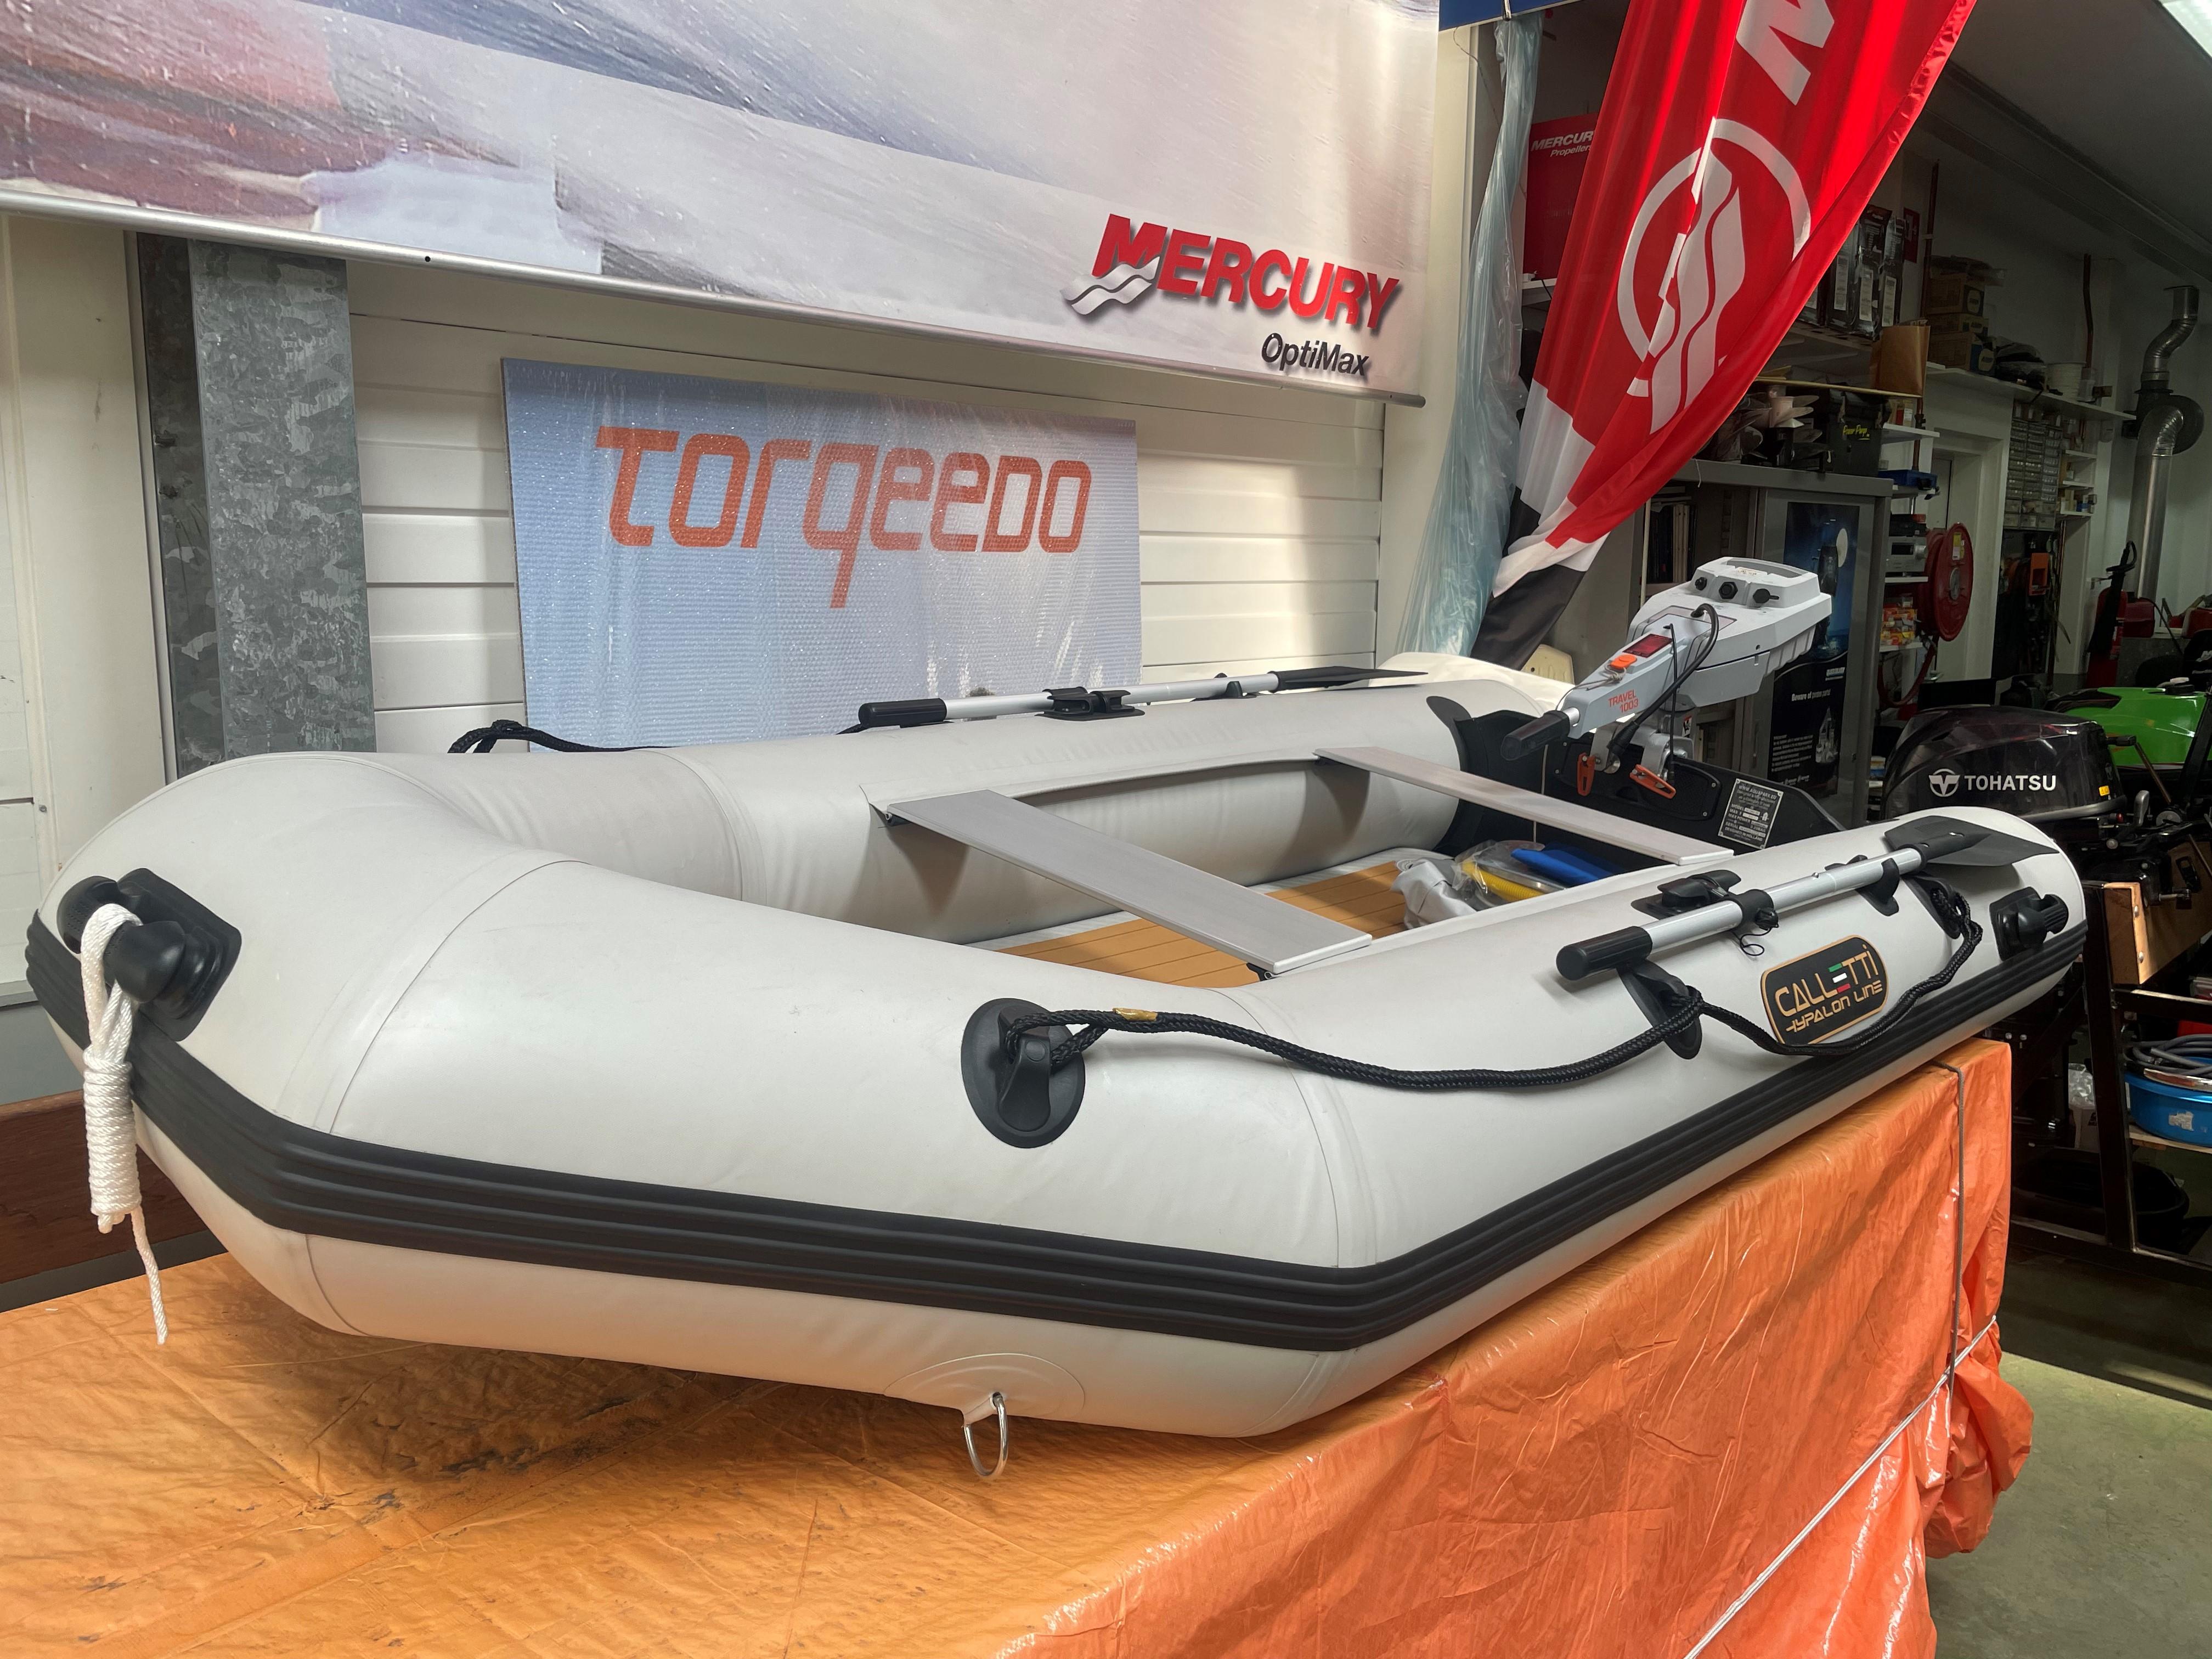 vrijheid Prestatie te binden 2022 AQUAPARX rubberboot met tohatsu 6pk, Diemen Netherlands - boats.com